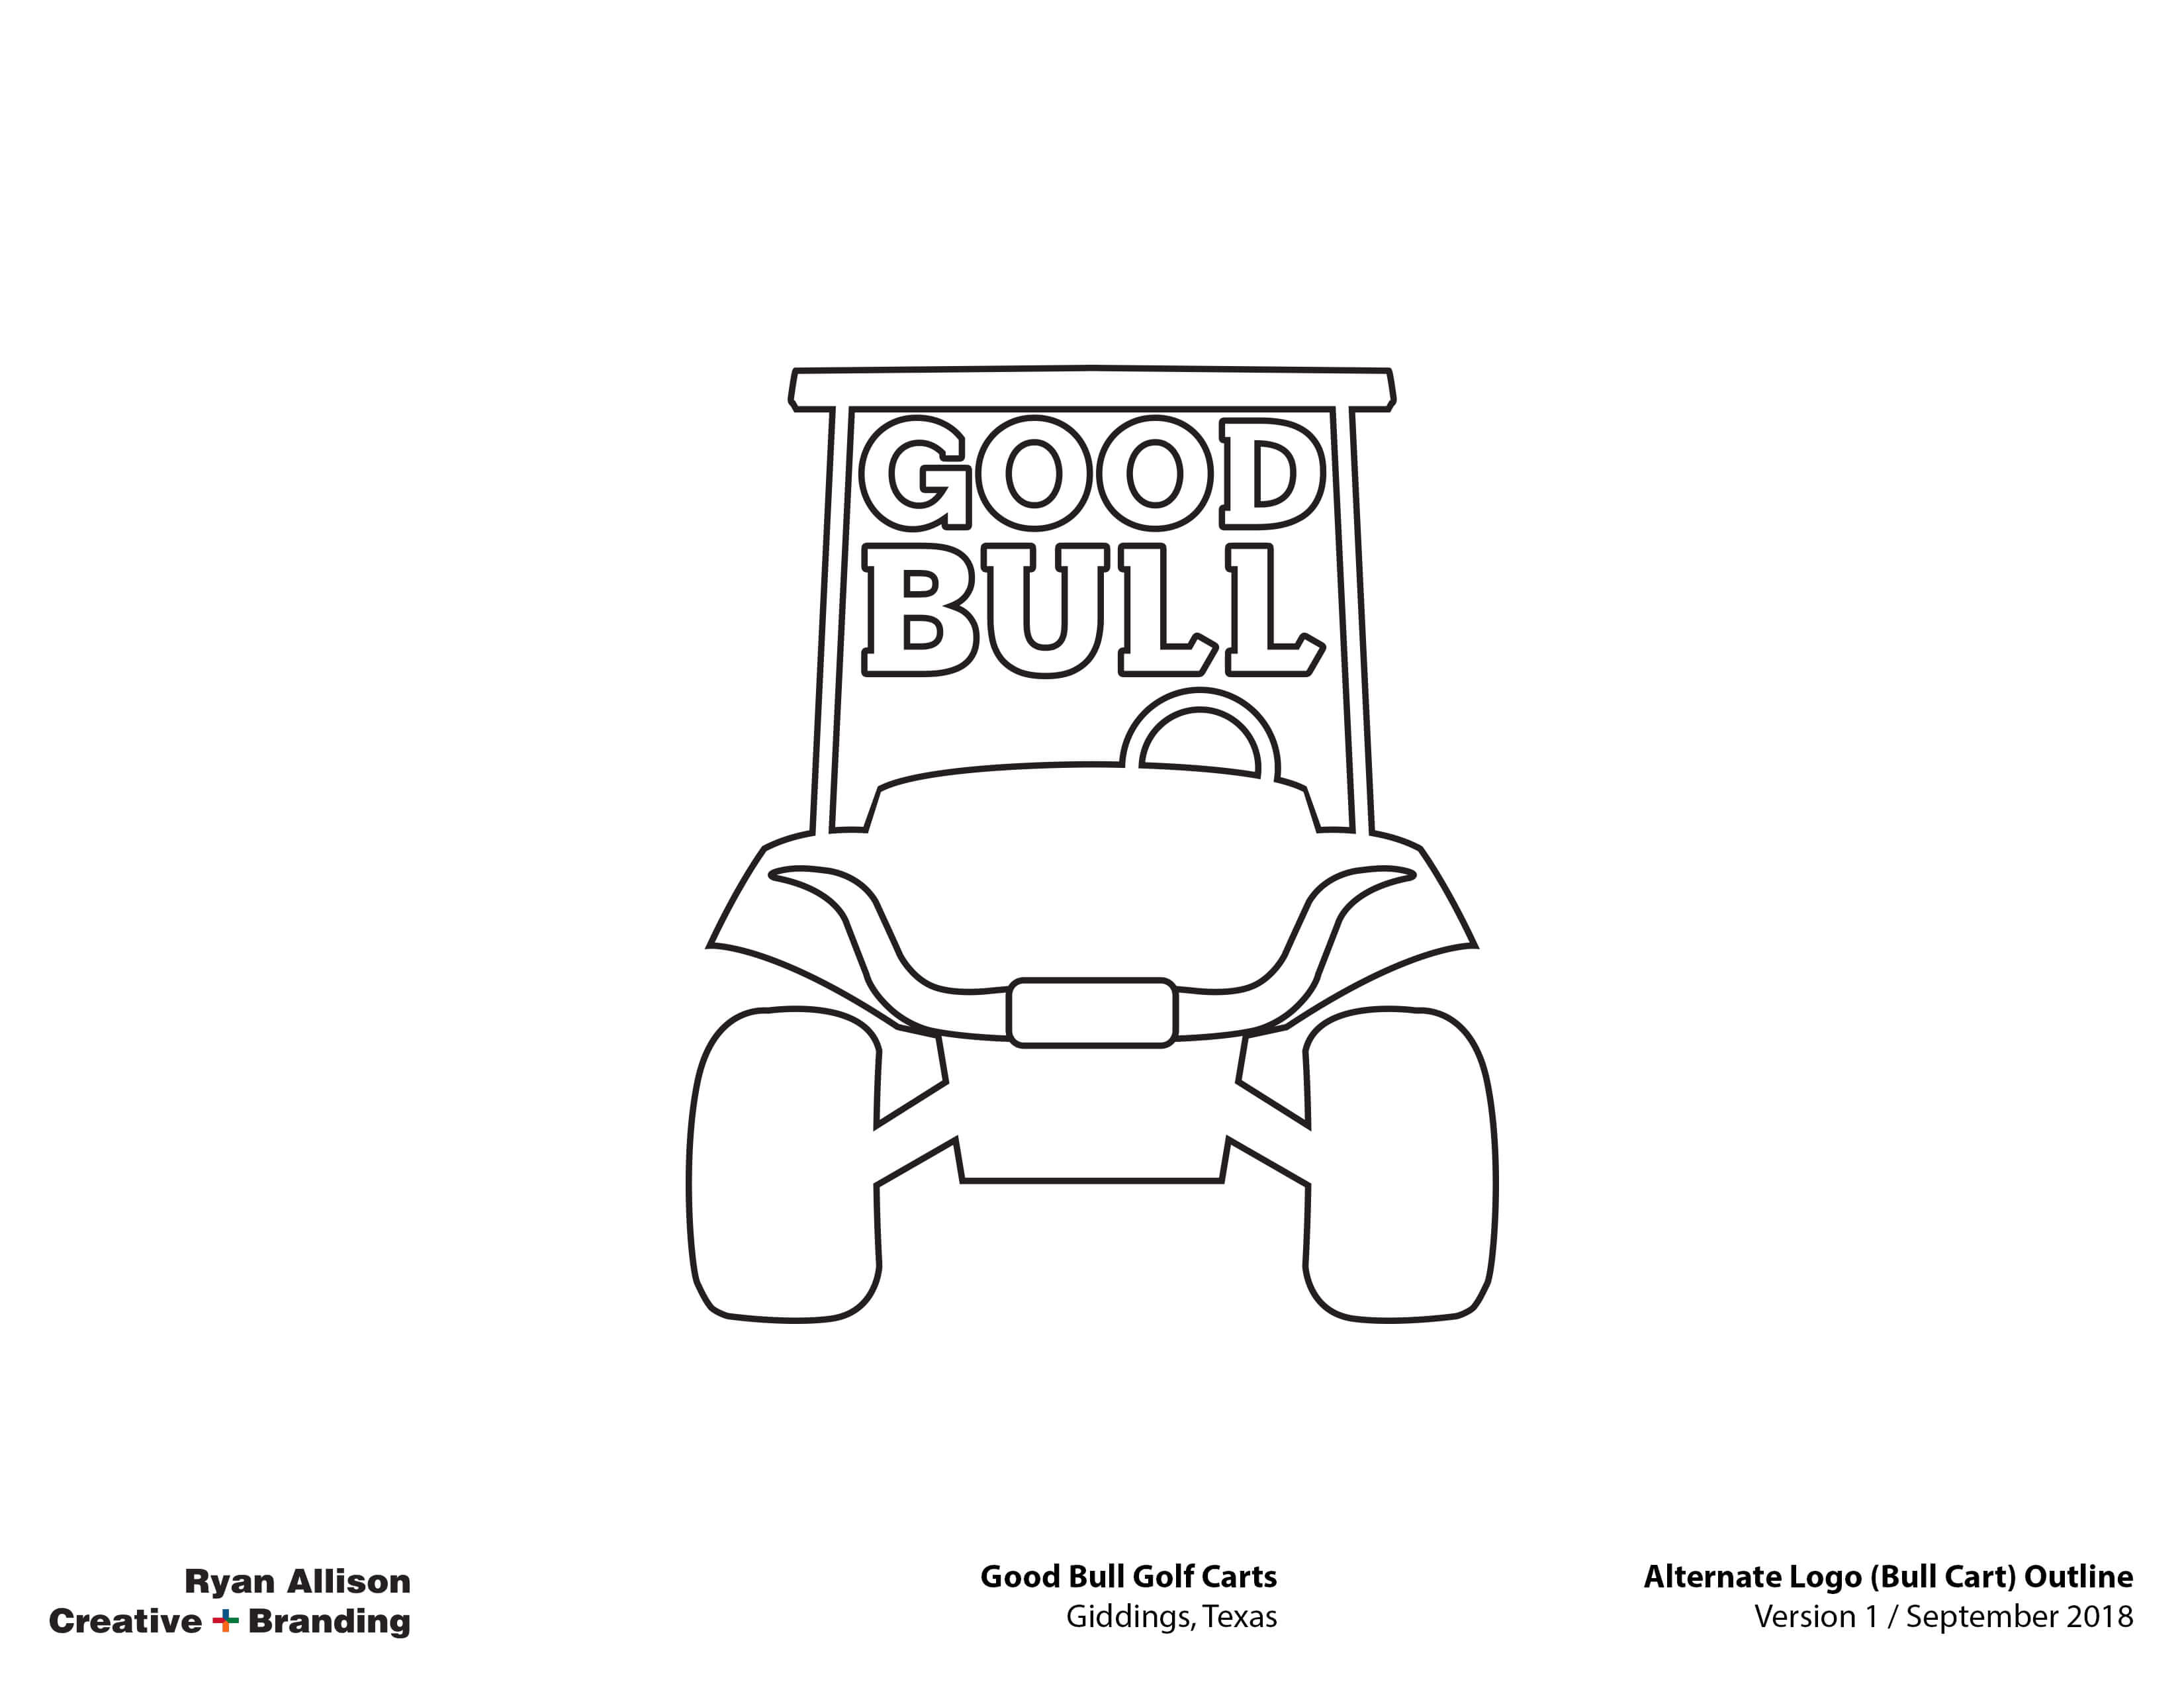 Good Bull Golf Carts Alternate Logo (Bull Cart) Outline - Logo - Ryan Allison Creative + Branding